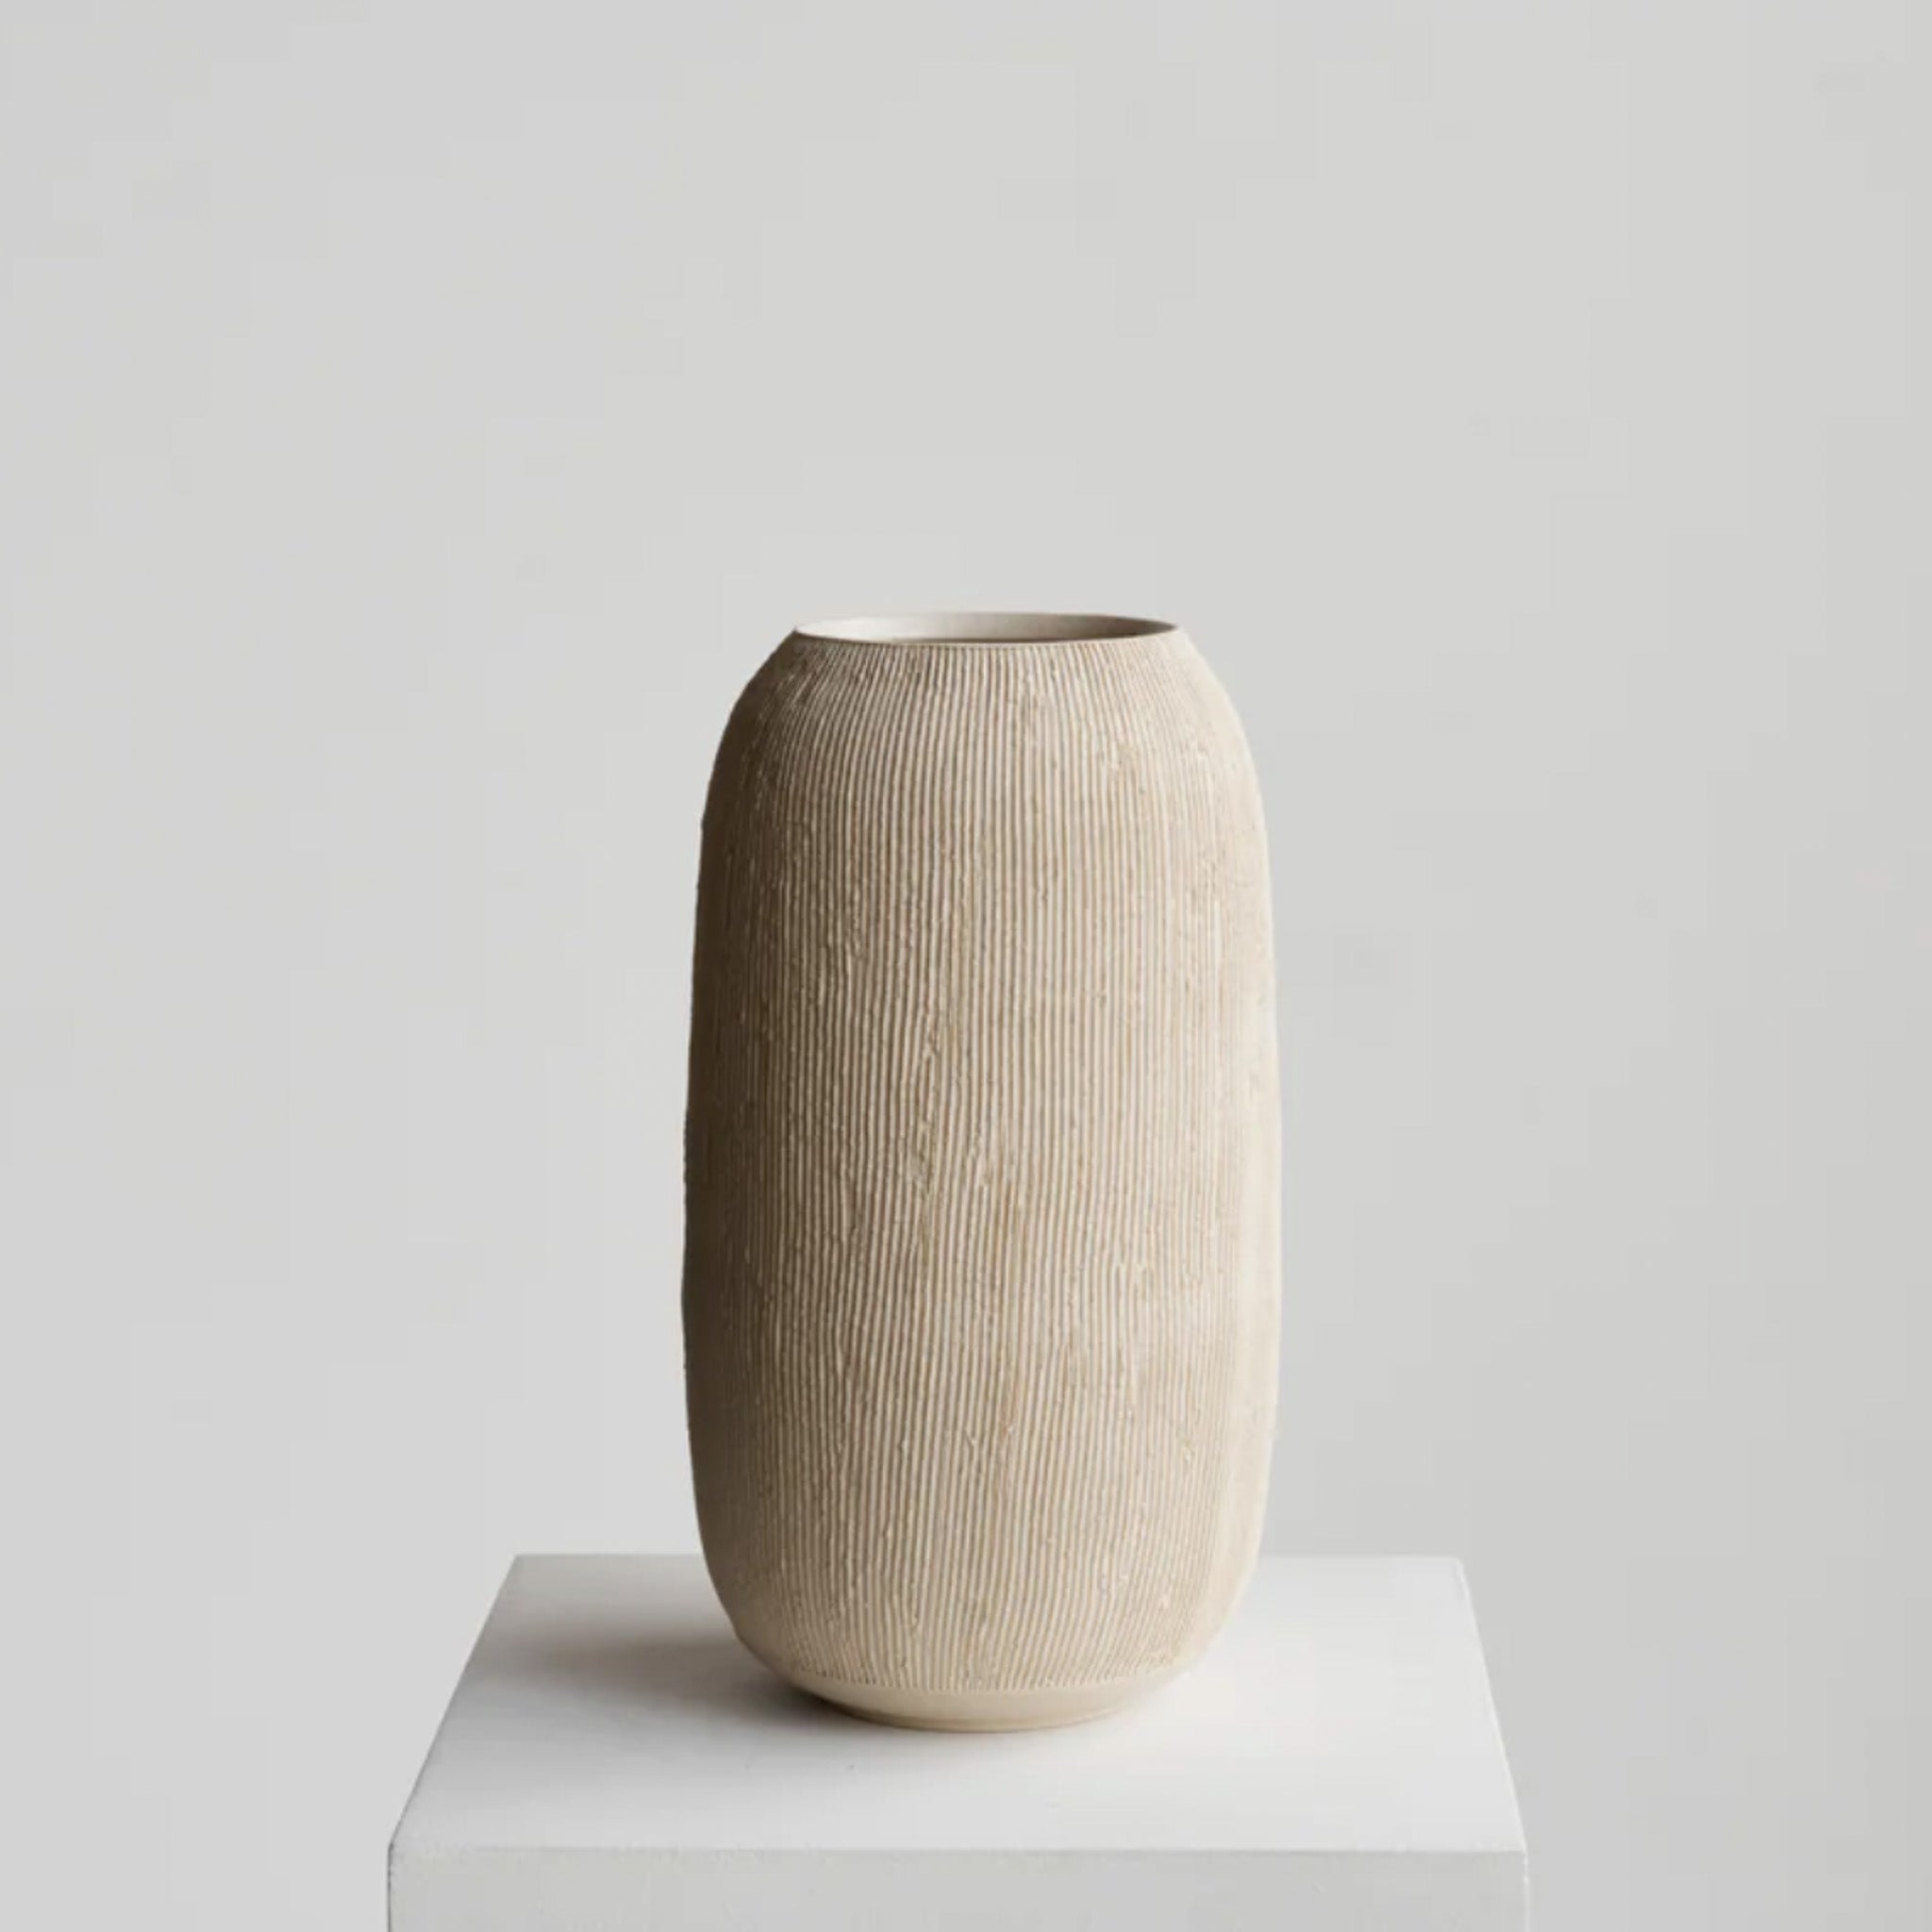 Ceramicah Decor Stone / Large Ceramicah Dune 03 Vessel-Sandstone-Large | CURBSIDE PICK UP ONLY